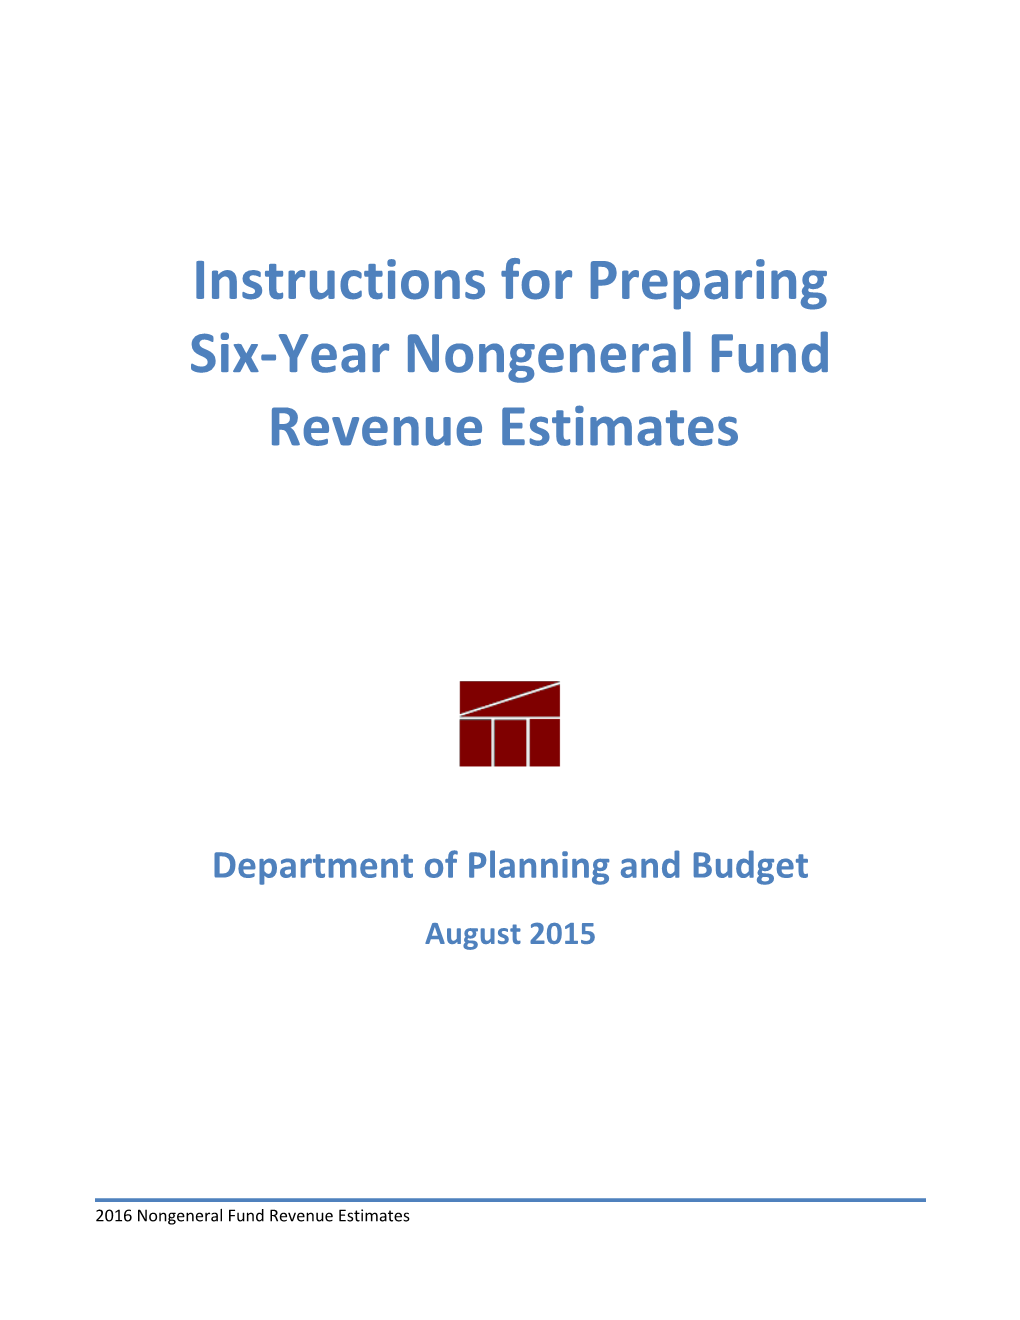 Six-Year Nongeneral Fund Revenue Estimates